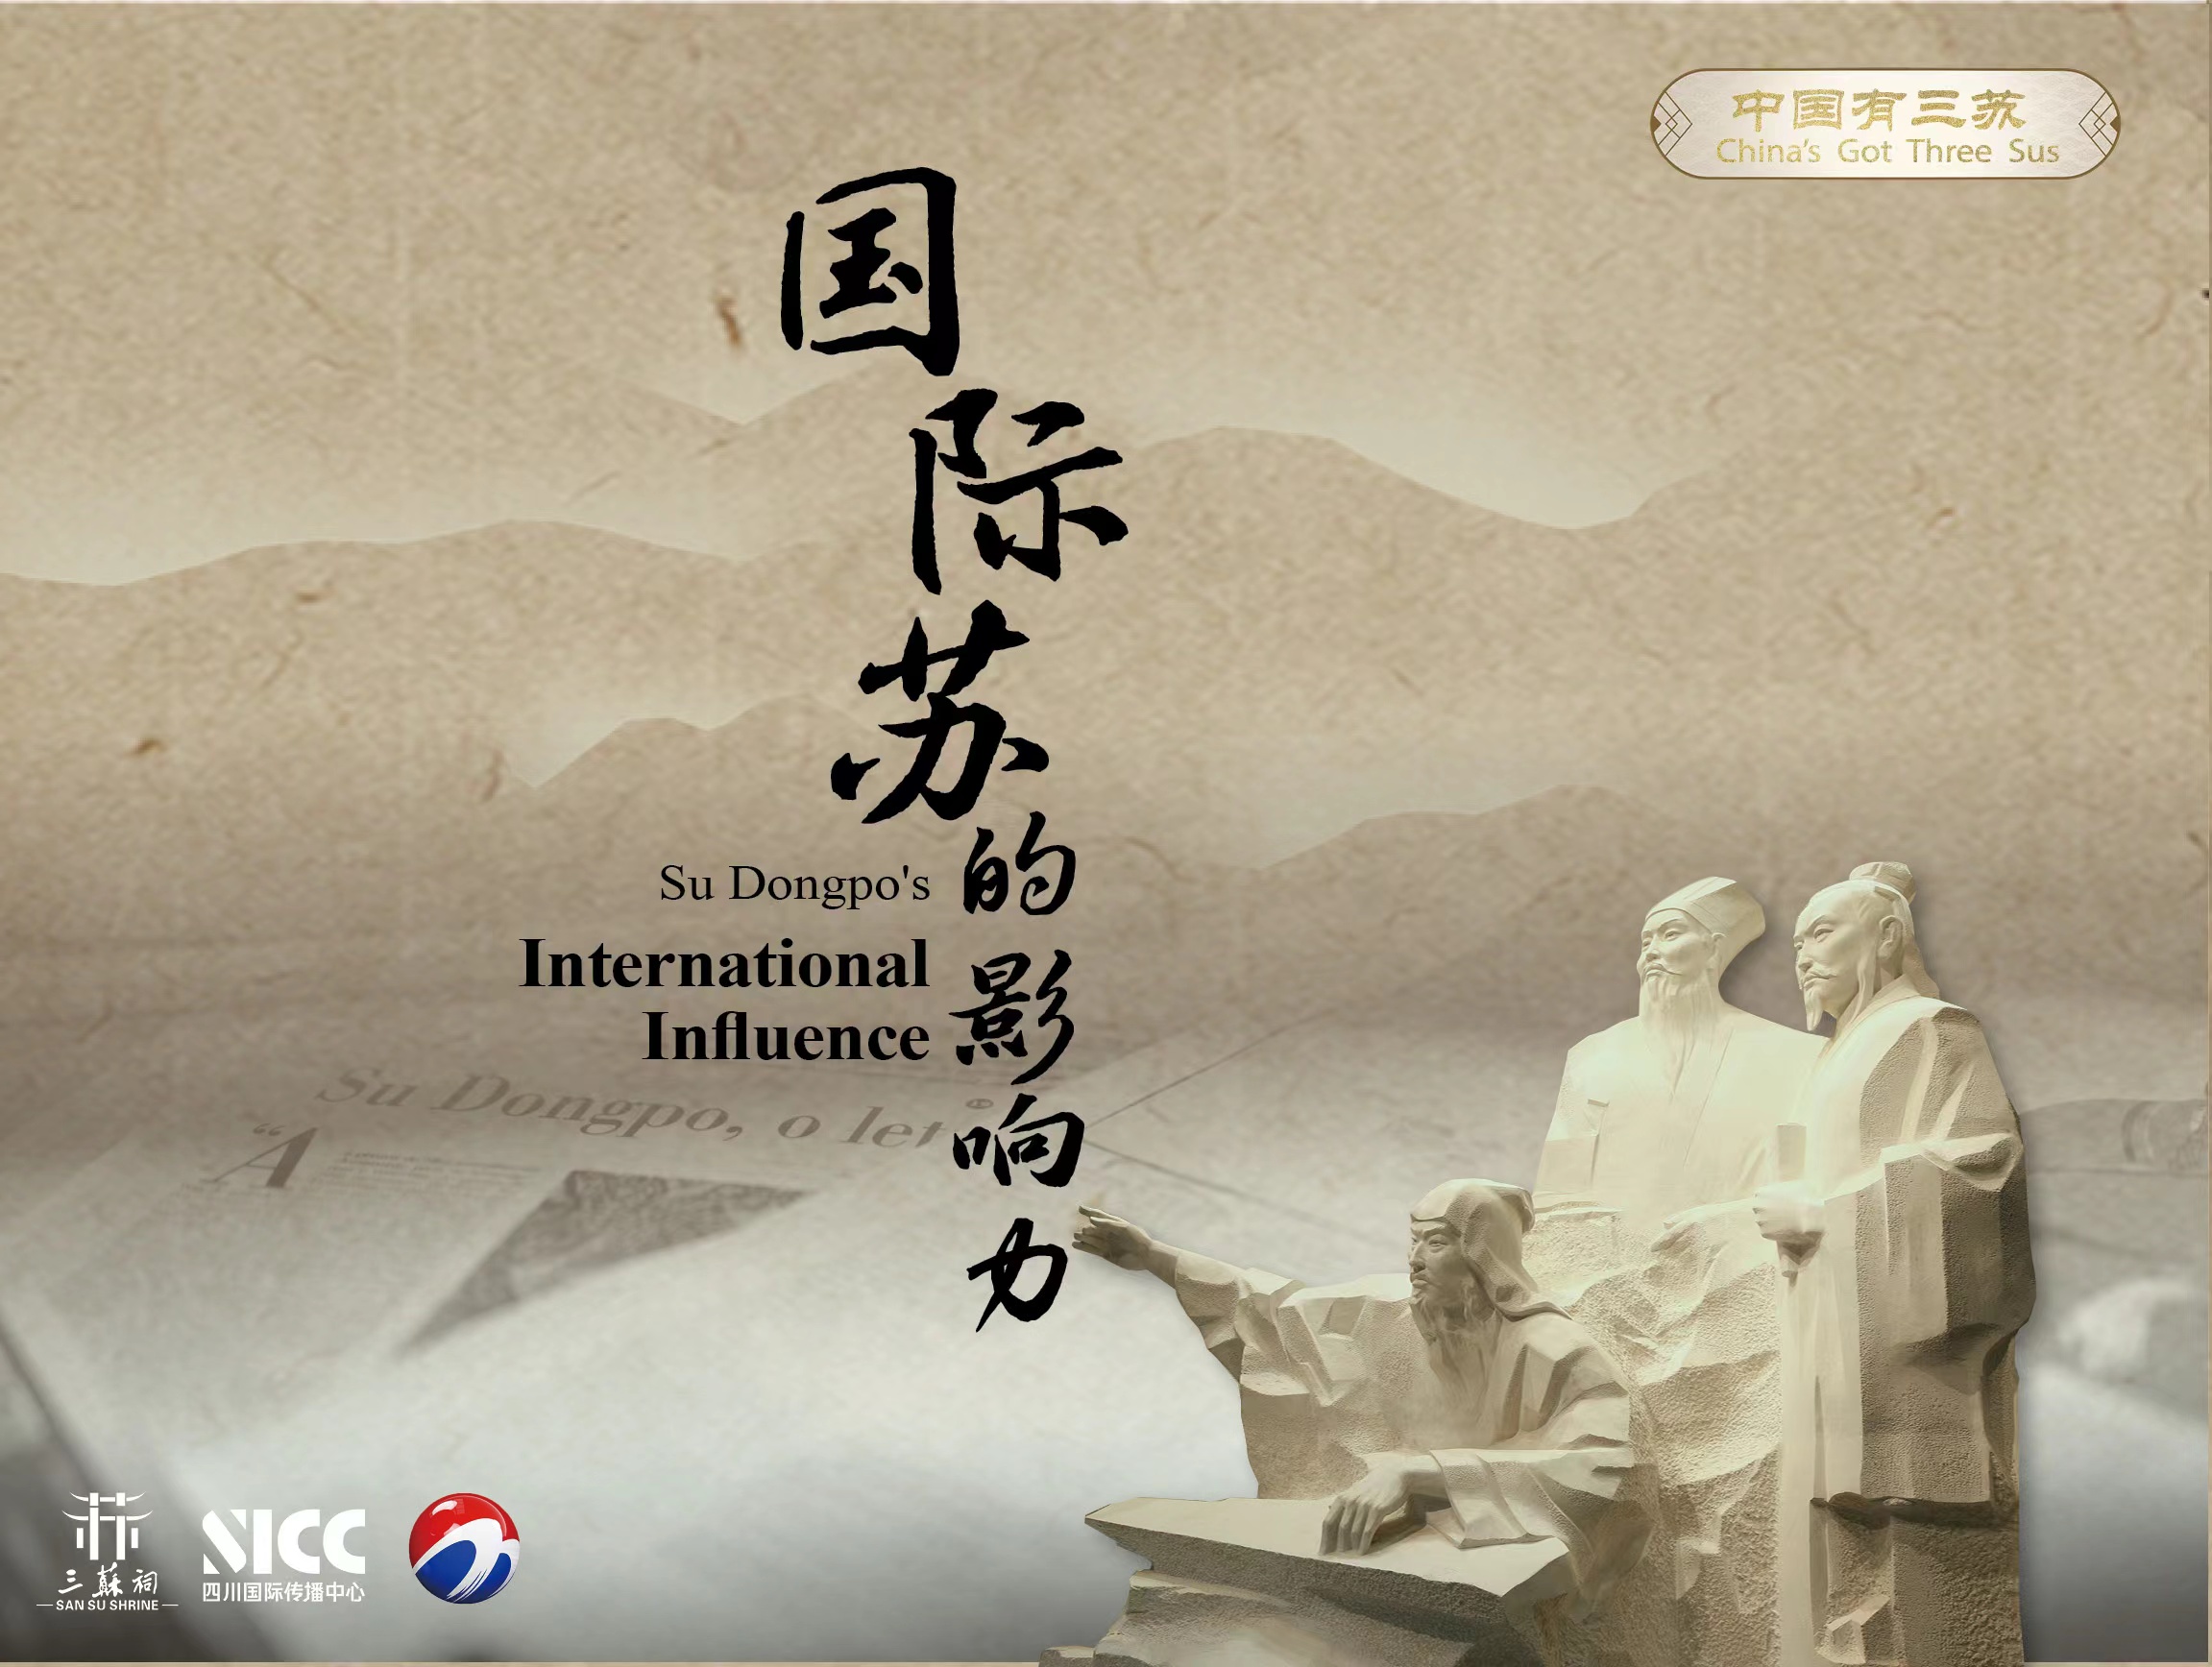 《中國有三蘇China`s Got Three Sus》第七集“國際蘇的影響力”